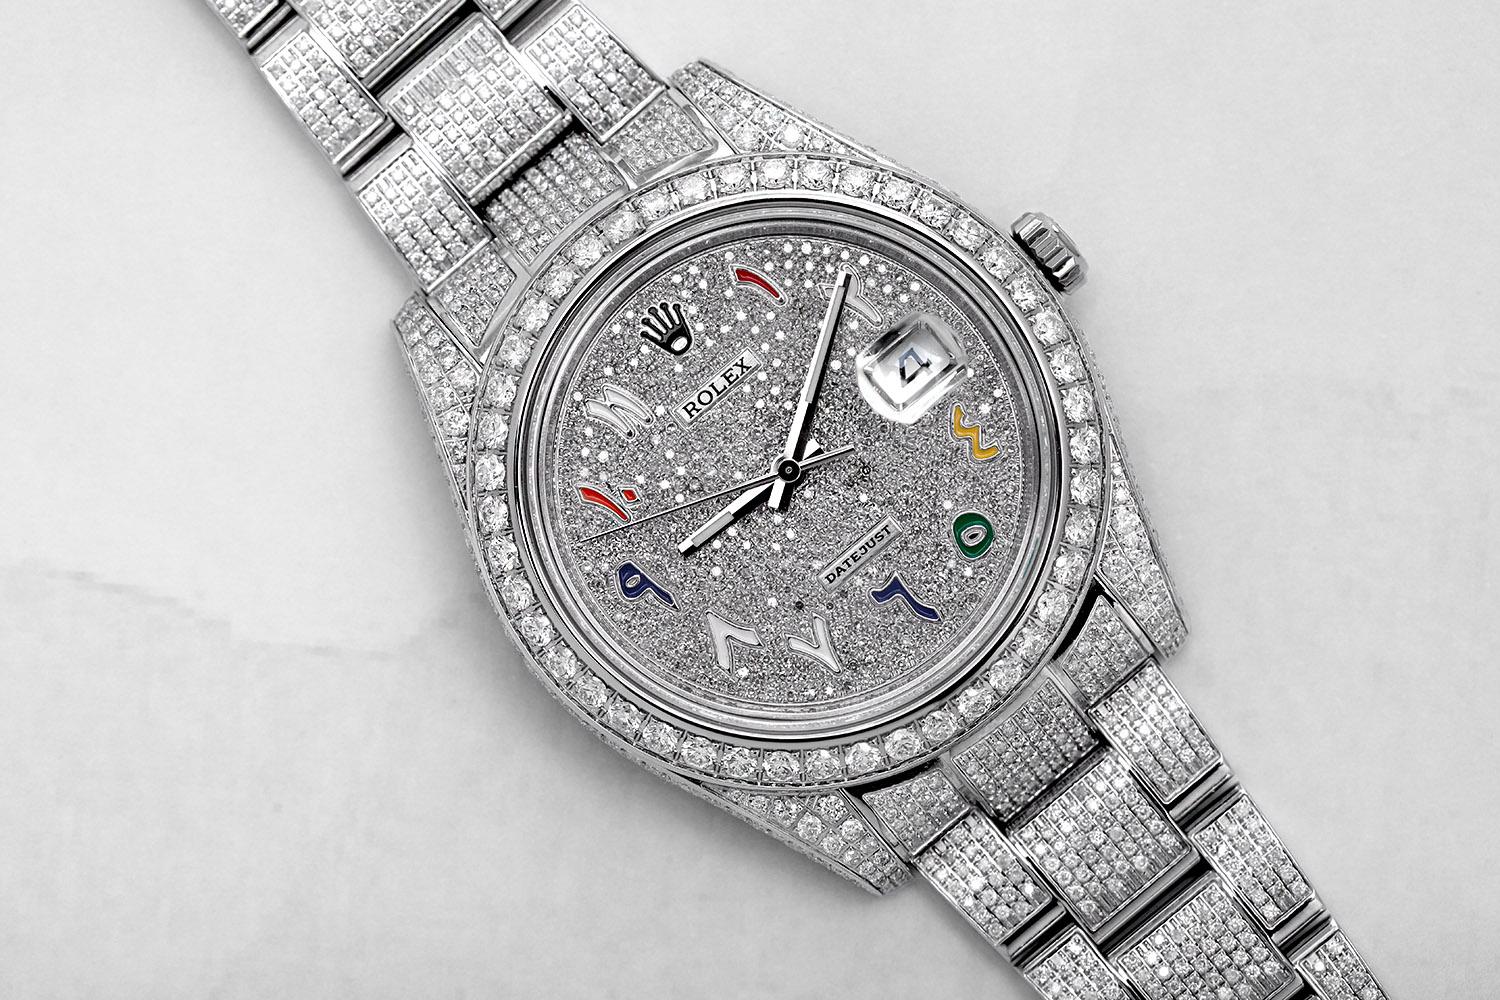 Montre RoRolex Datejust II 41mm en acier inoxydable de luxe entièrement glacée avec cadran en diamant pavé. Cette montre est dans un état comme neuf. Elle a été polie, entretenue et ne présente aucune rayure ou imperfection visible. Toutes nos